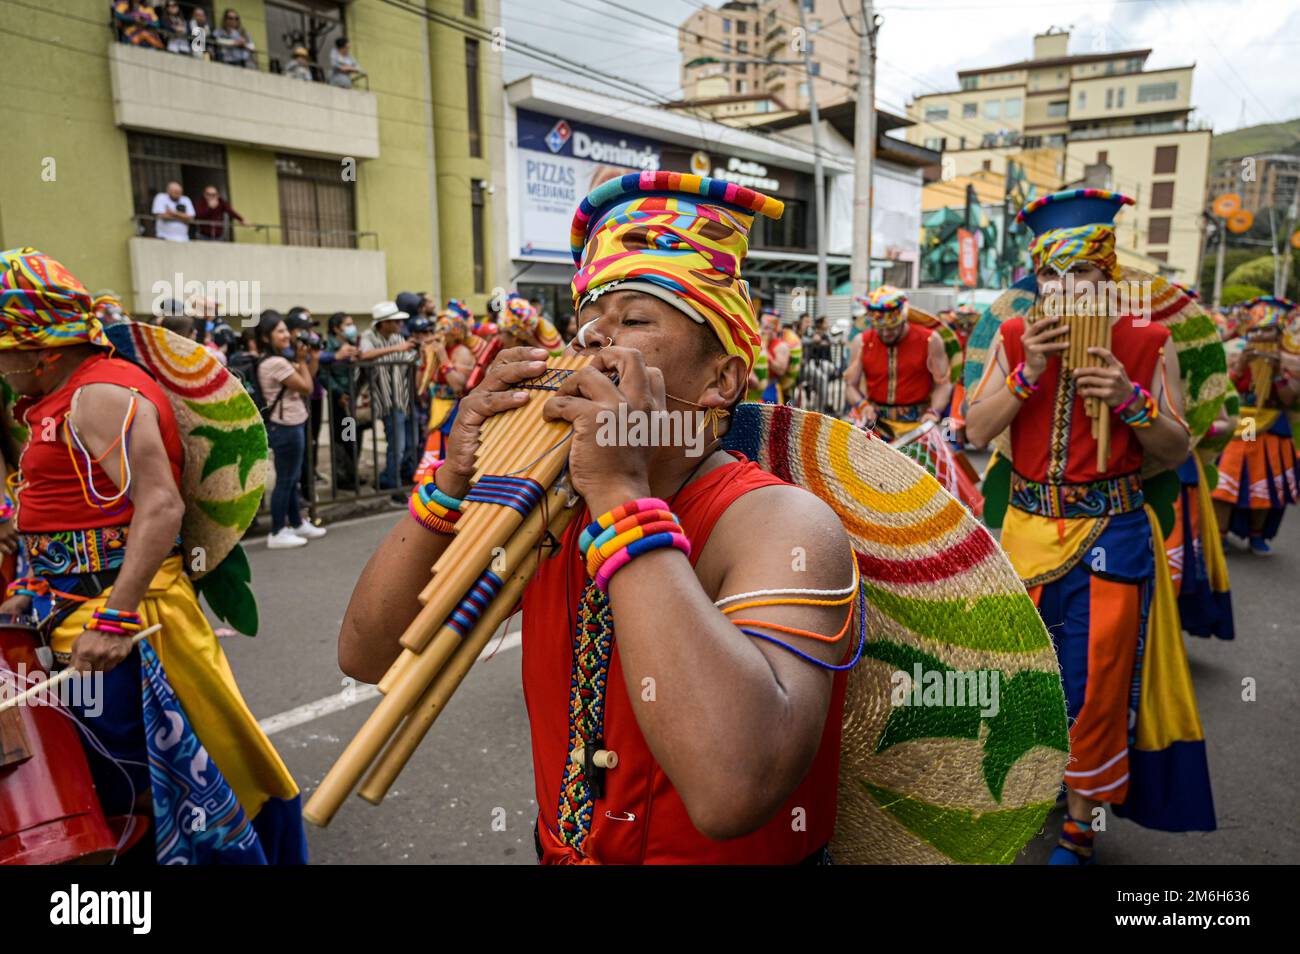 Varios artistas se reúnen en este segundo día de carnaval para realizar la 'Canción a la Tierra' en el Carnaval de Negros y Blancos. Pasto, Nariño, enero Foto de stock